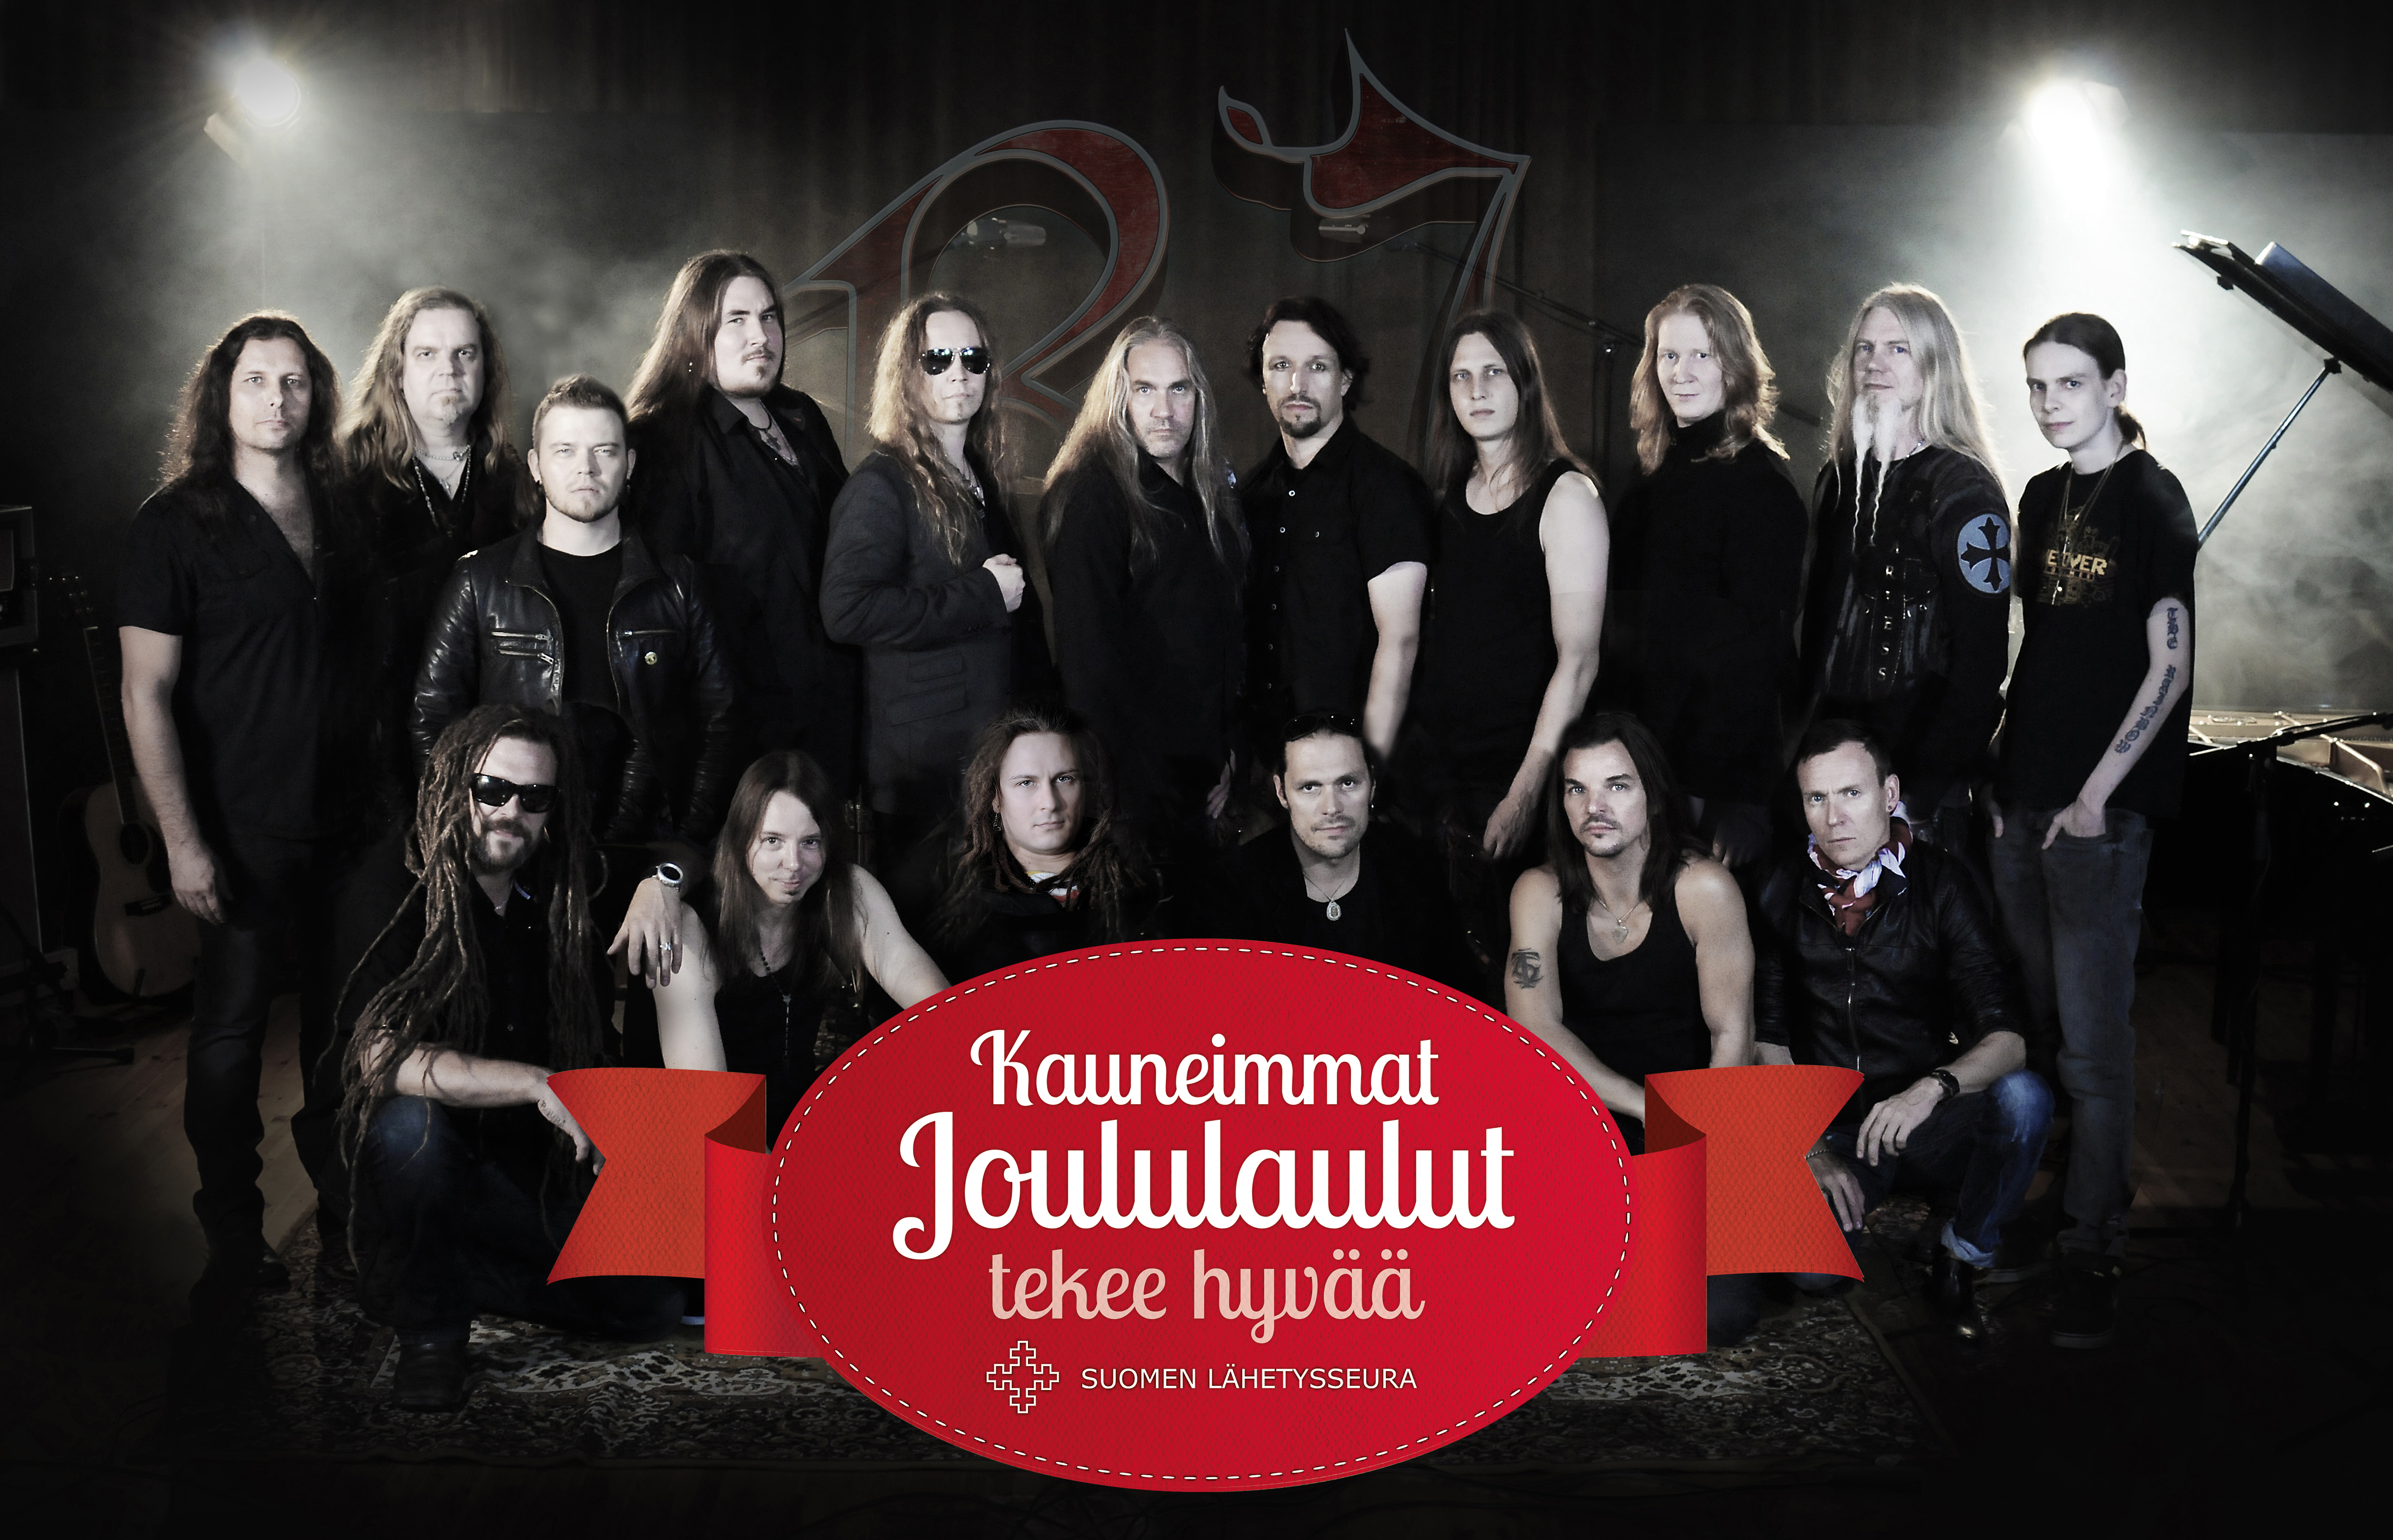 Kauneimpia Joululauluja -yhteistyössä mukana Raskasta Joulua -metallimuusikot. Takarivissä vasemmalta Pasi Rantanen